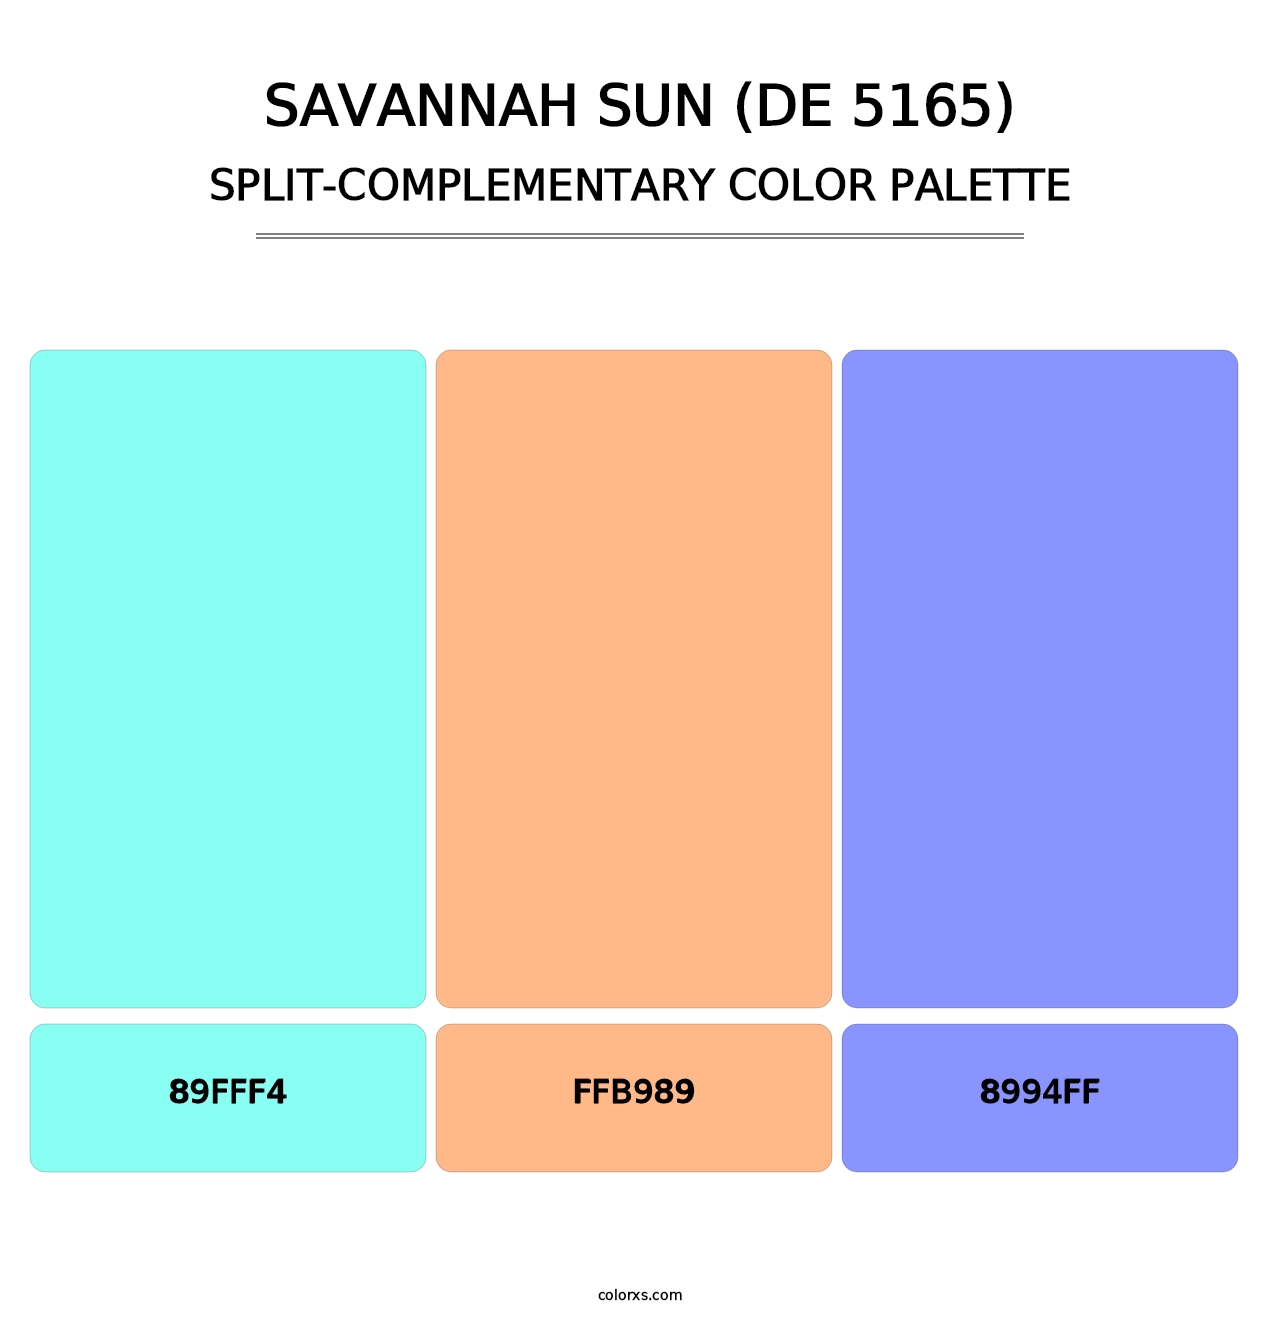 Savannah Sun (DE 5165) - Split-Complementary Color Palette